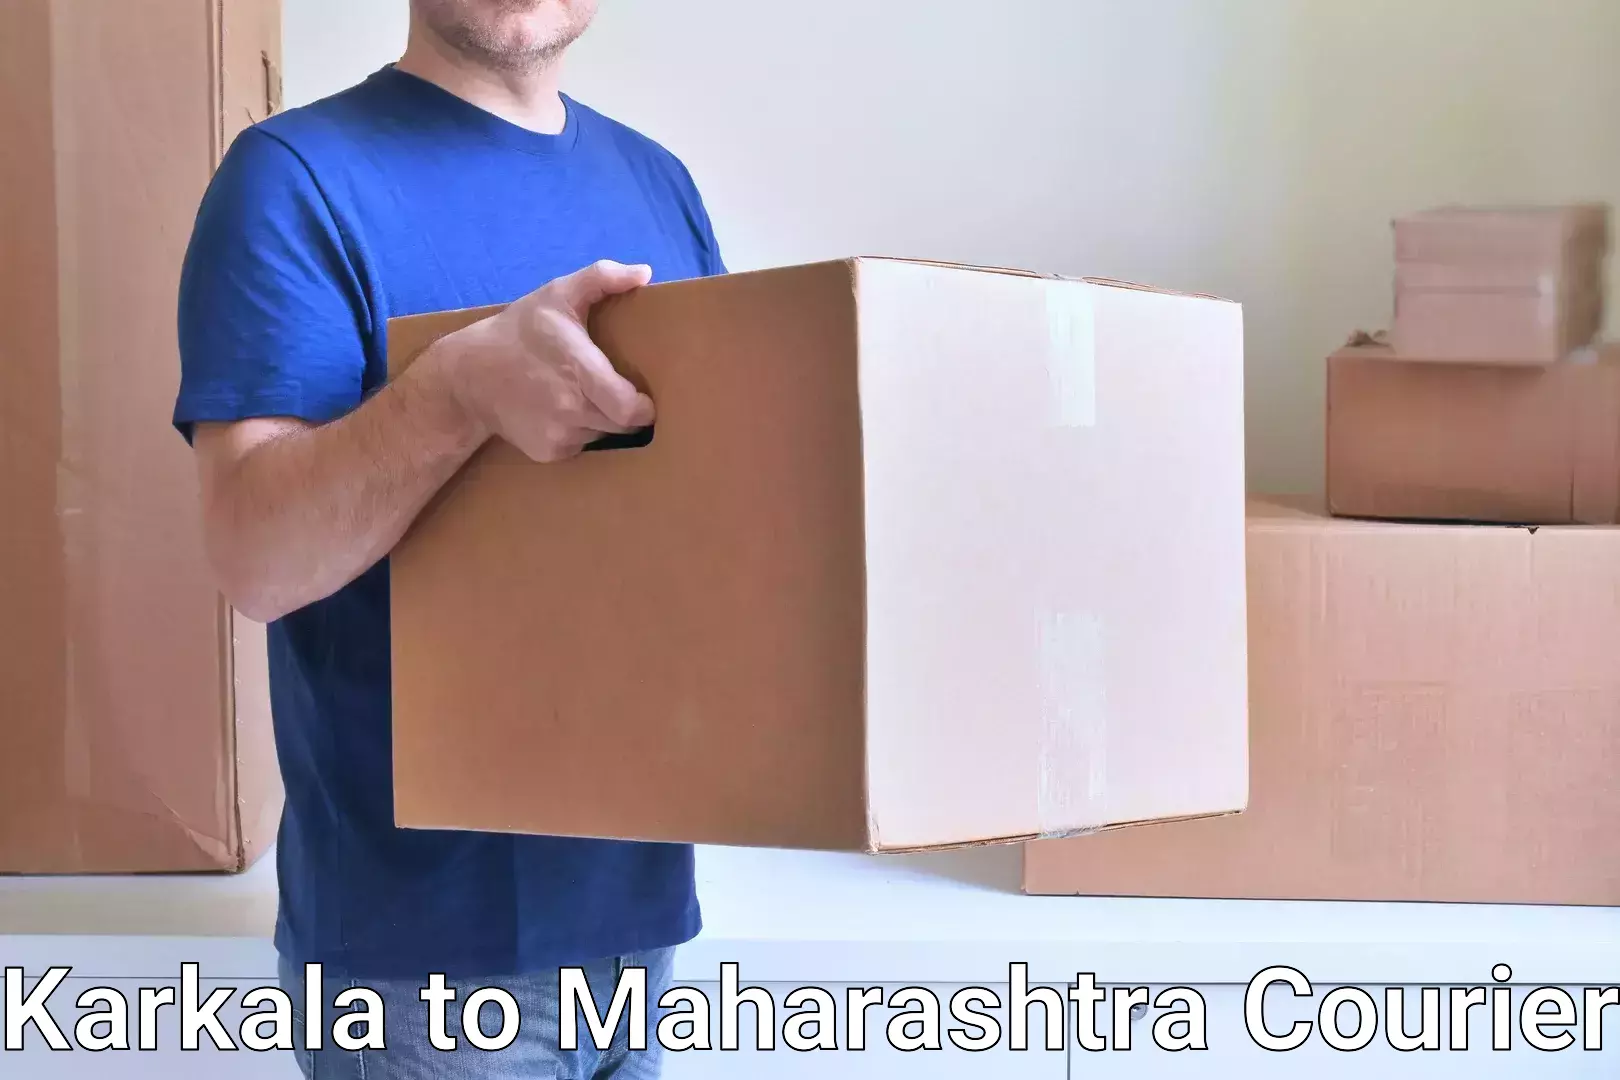 Tailored delivery services Karkala to Maharashtra